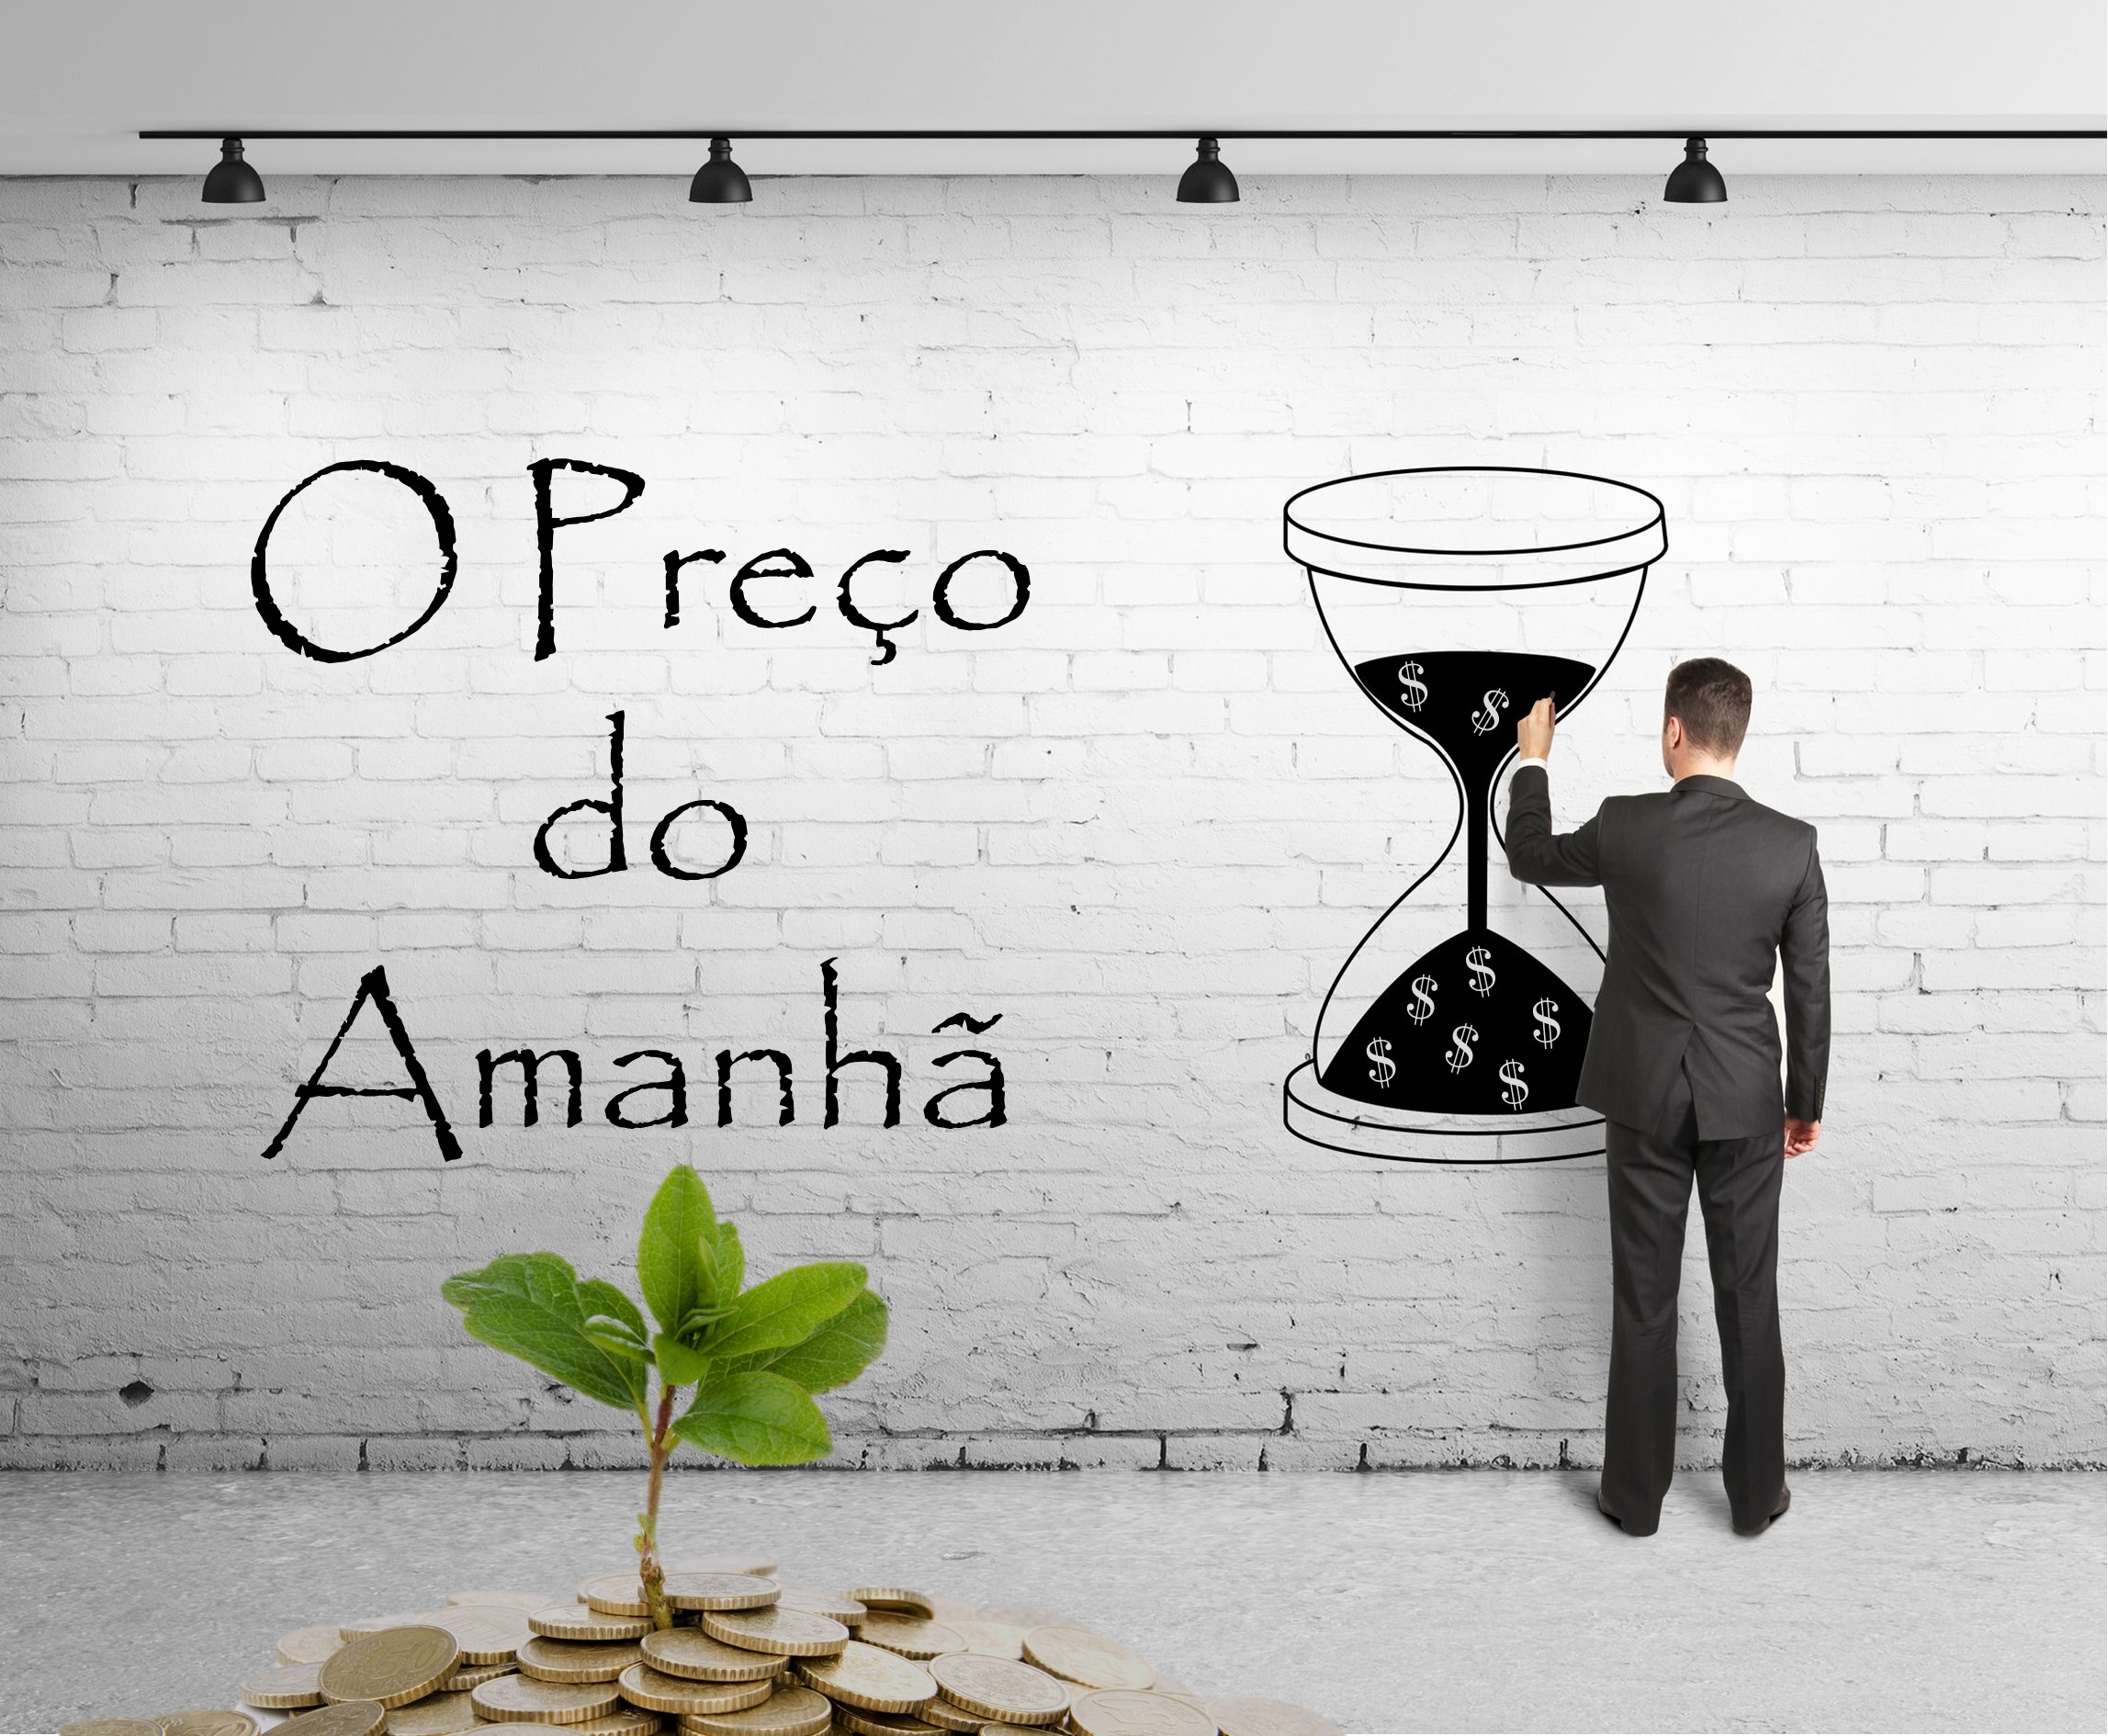 (c) Oprecodoamanha.com.br